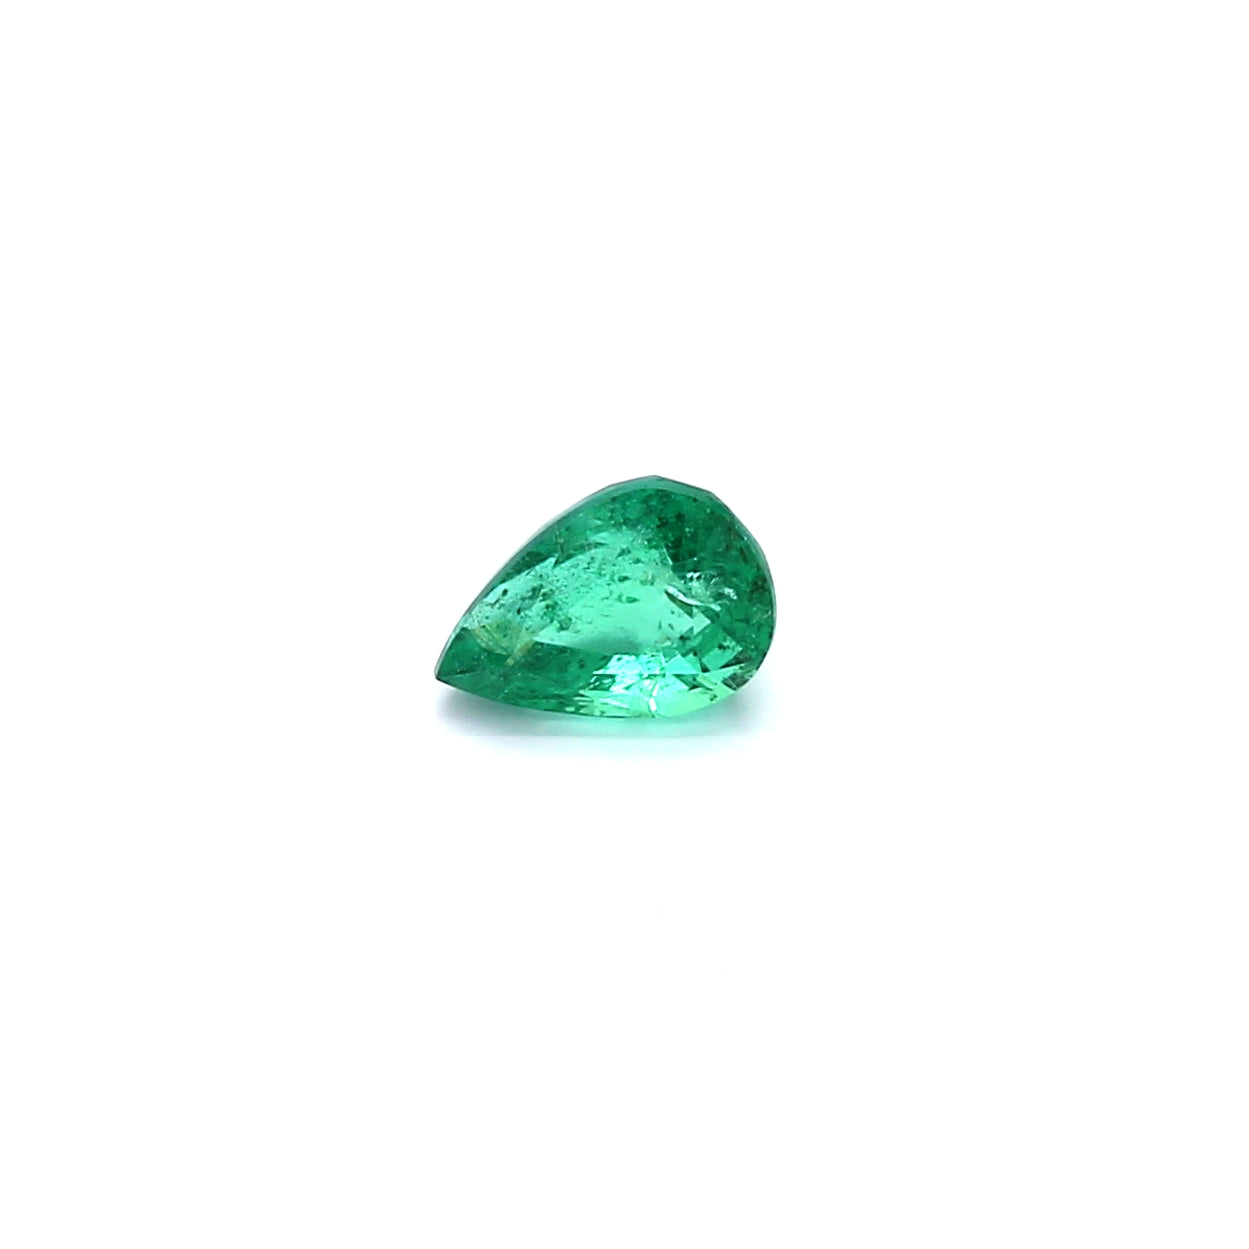 0.58ct Pear Shape Emerald, Minor Oil, Zambia - 6.22 x 4.44 x 3.81mm